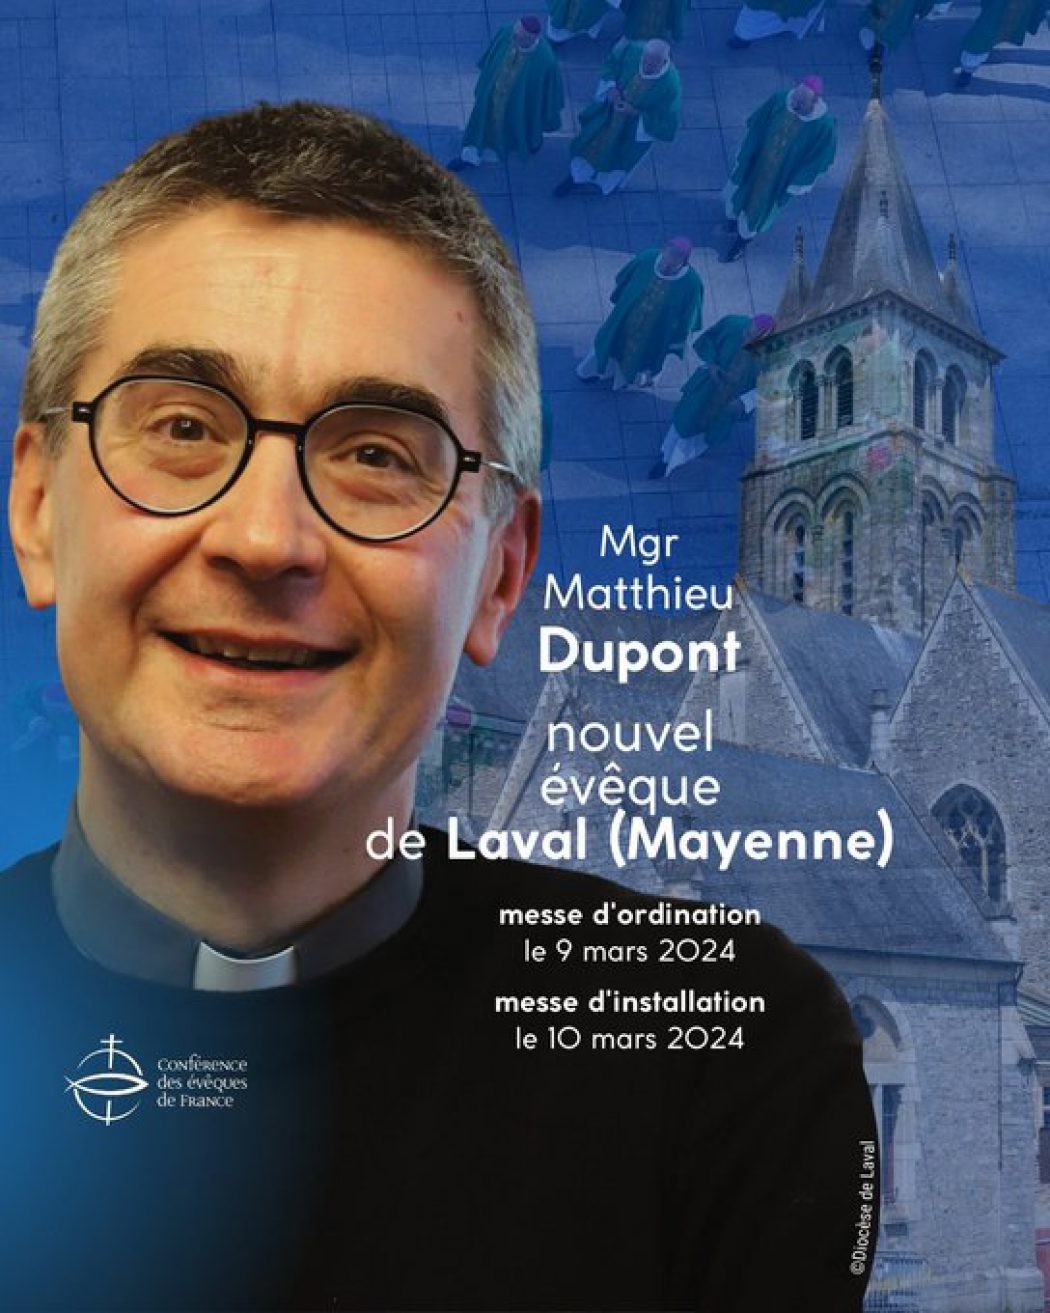 Mgr Matthieu Dupont nommé évêque de Laval